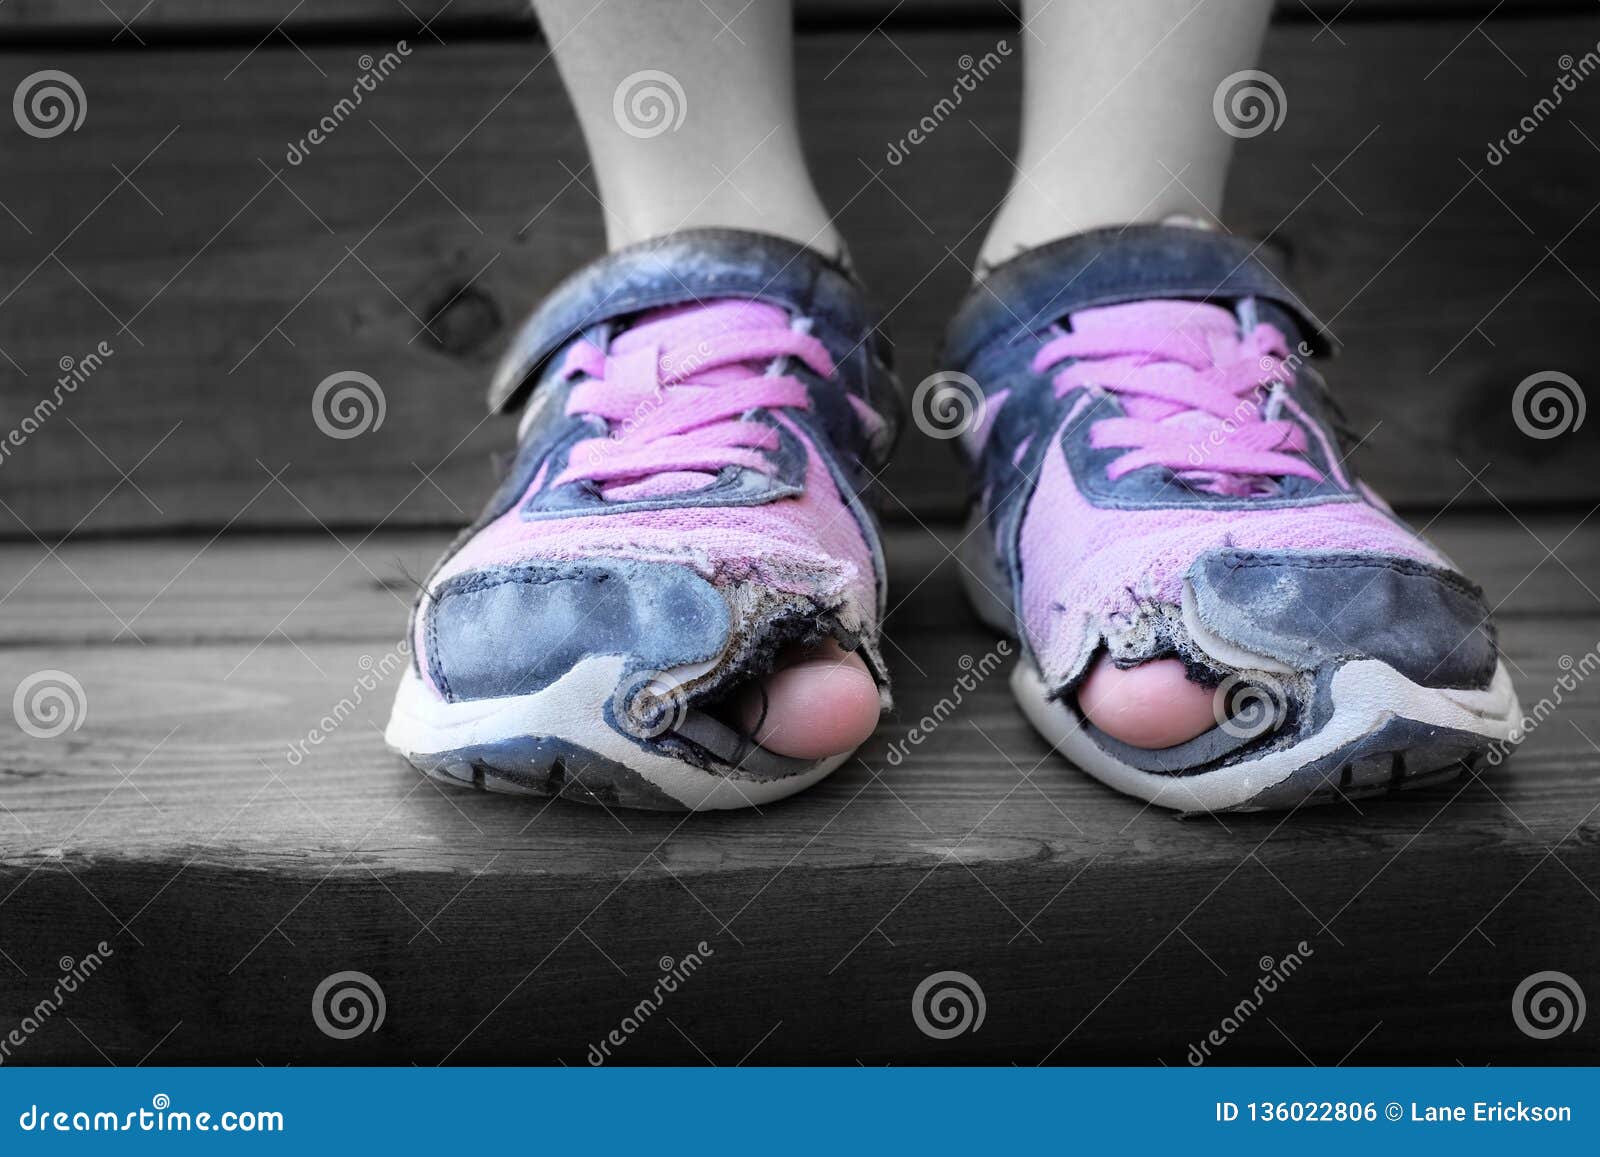 Fiel Caballo Mitones Usados Zapatos Viejos Con Los Agujeros En Niño De Los Desamparados De Los  Dedos Del Pie Foto de archivo - Imagen de ruinoso, polvoriento: 136022806